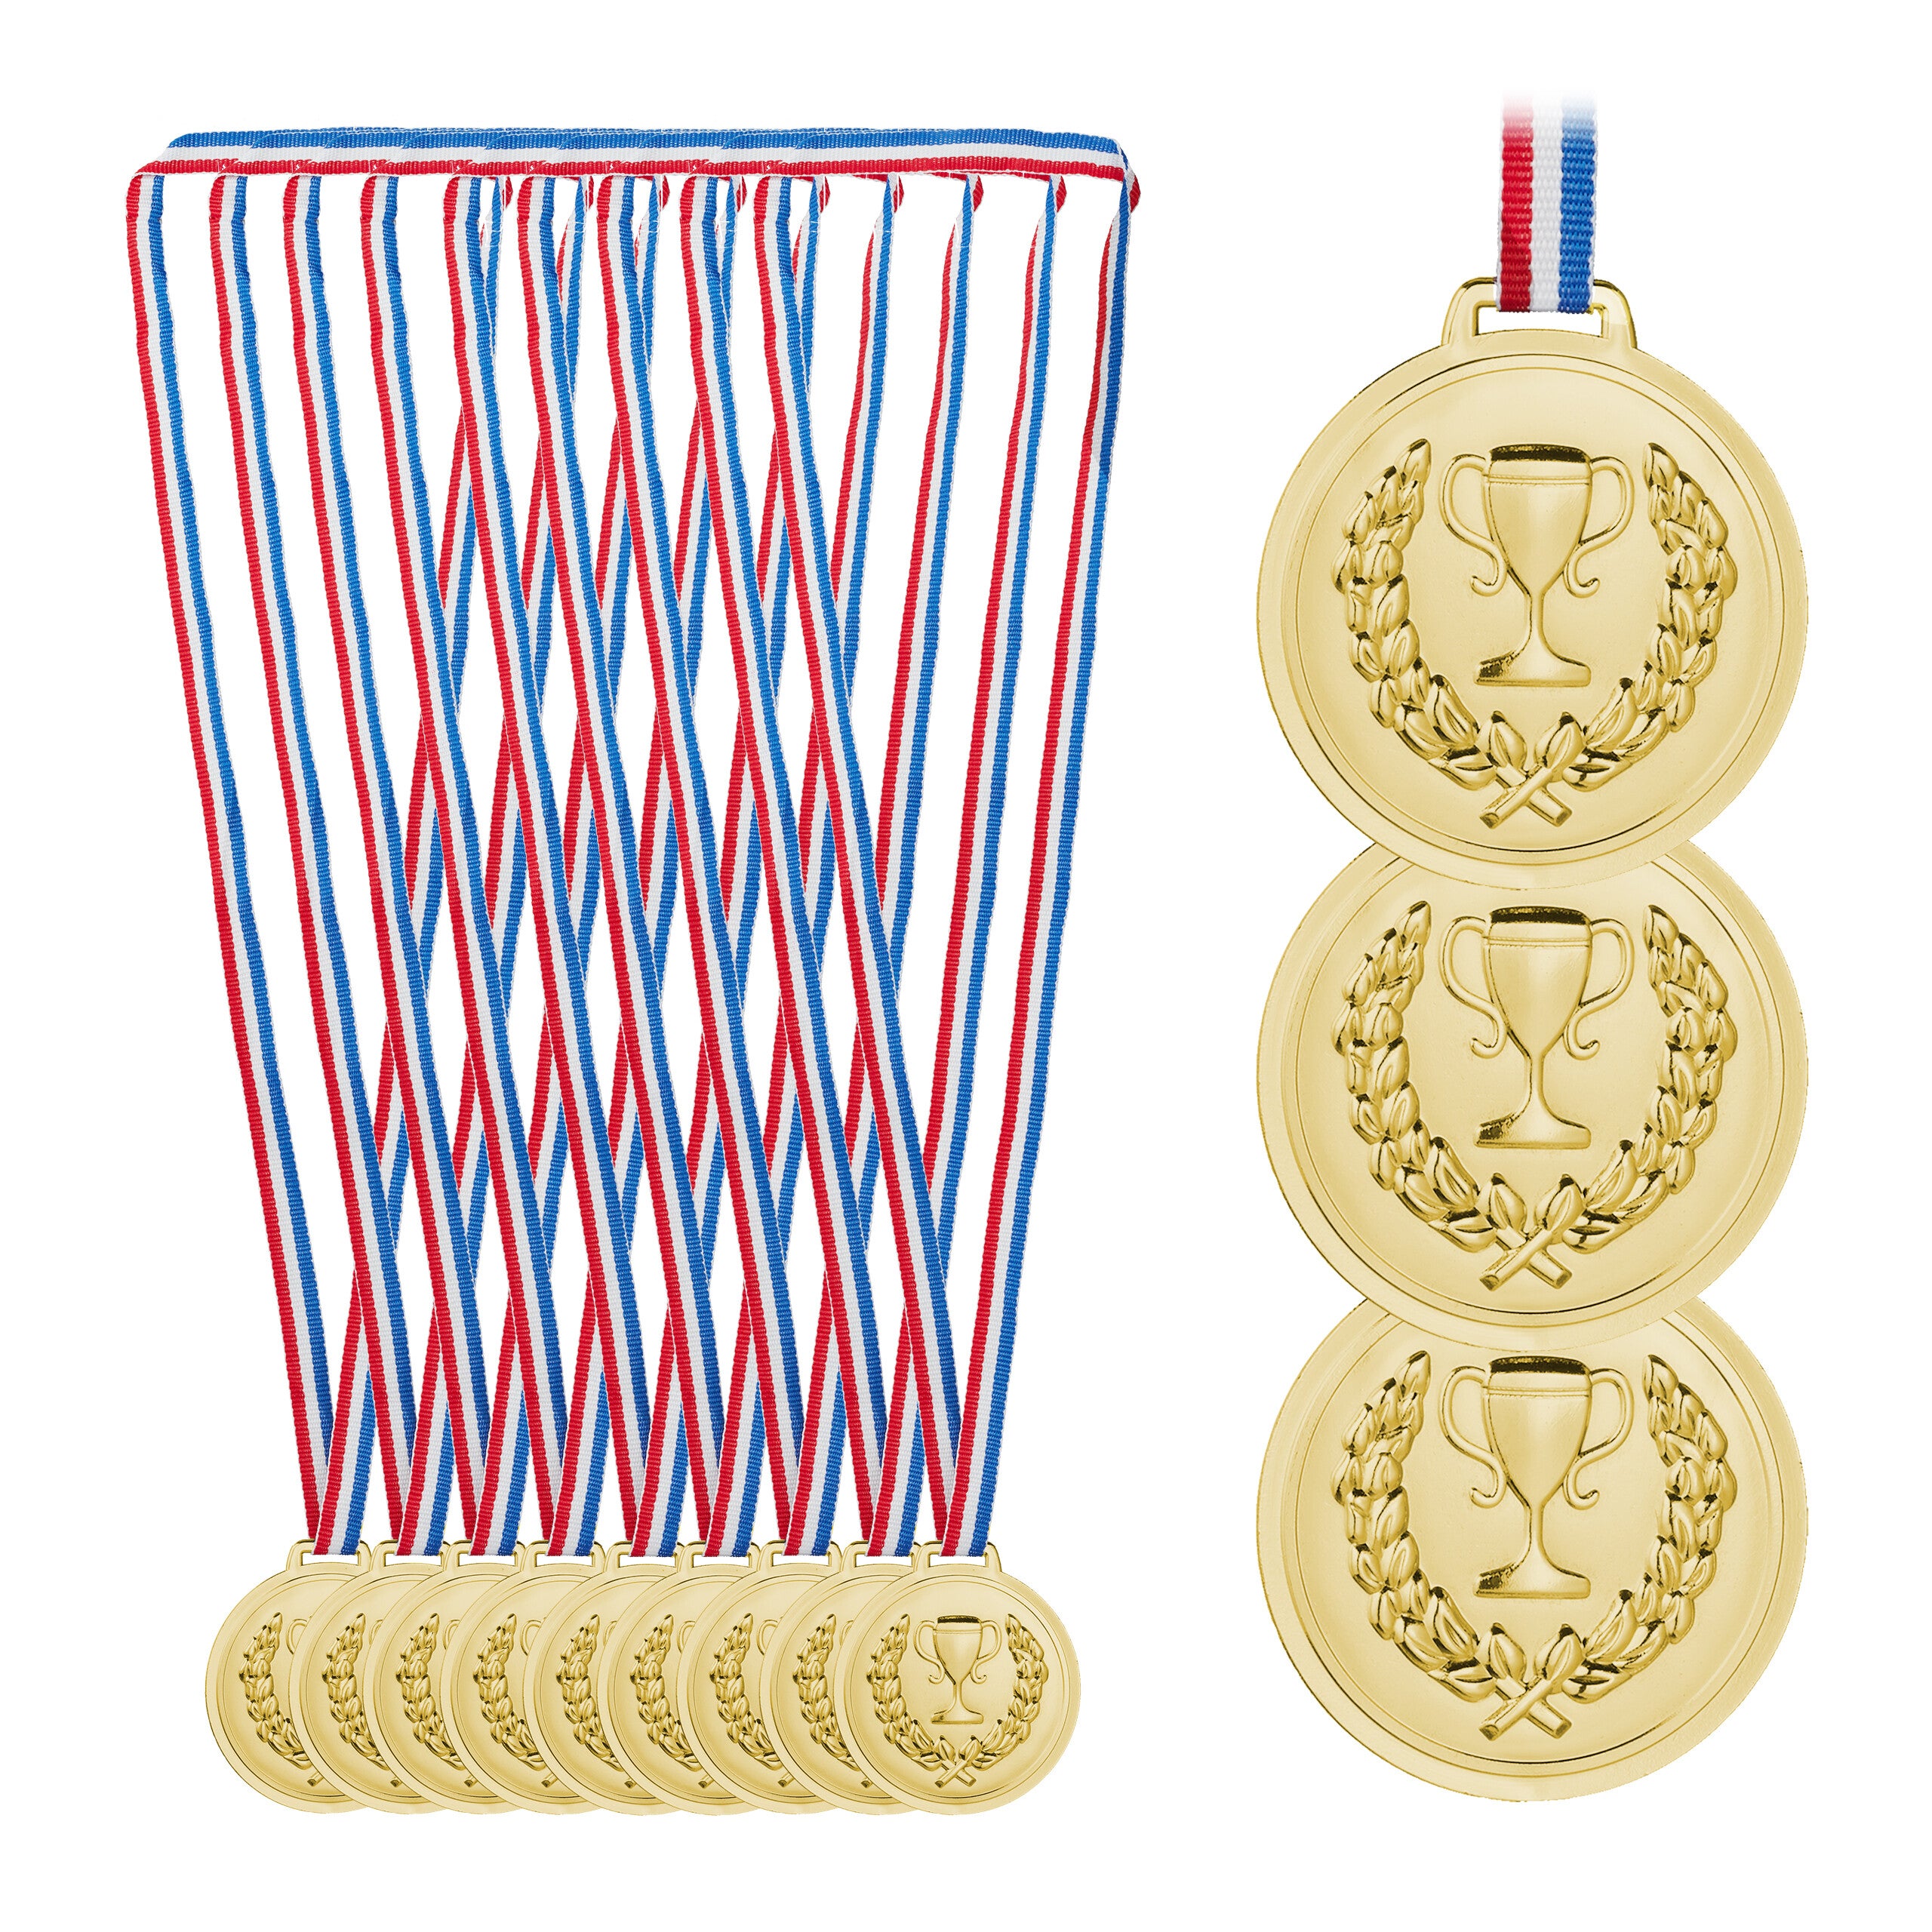 Relaxdays Lot de 12 médailles d'or, pour enfants, ruban, torche, récompense  pour remise de prix, 6 cm Ø, plastique, doré